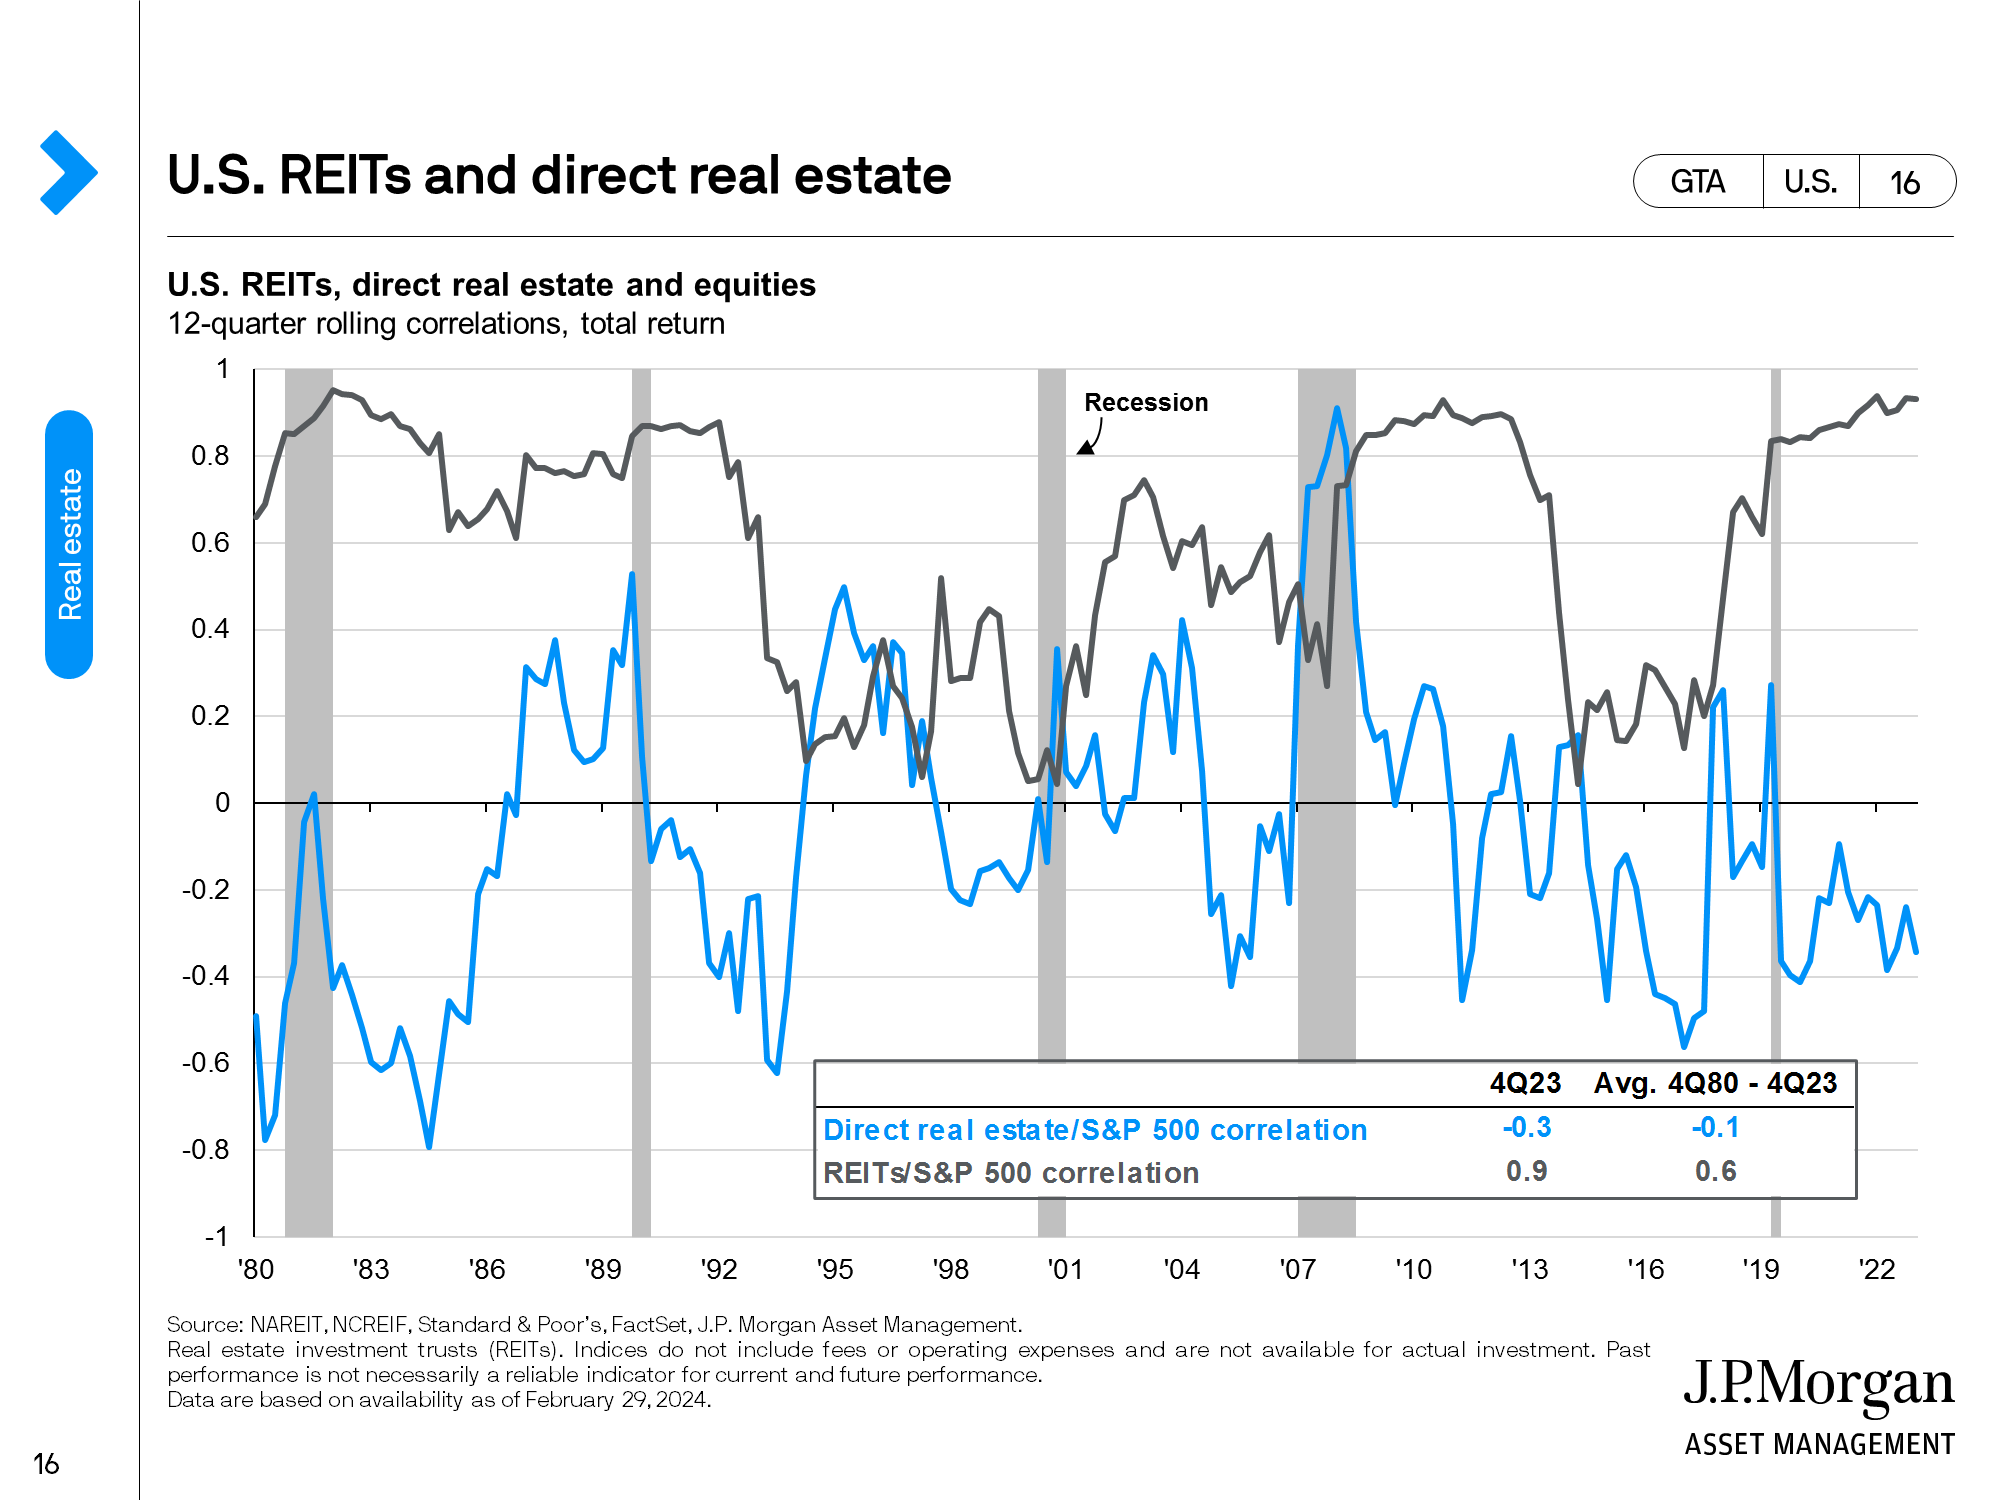 U.S. real estate: Industrial 